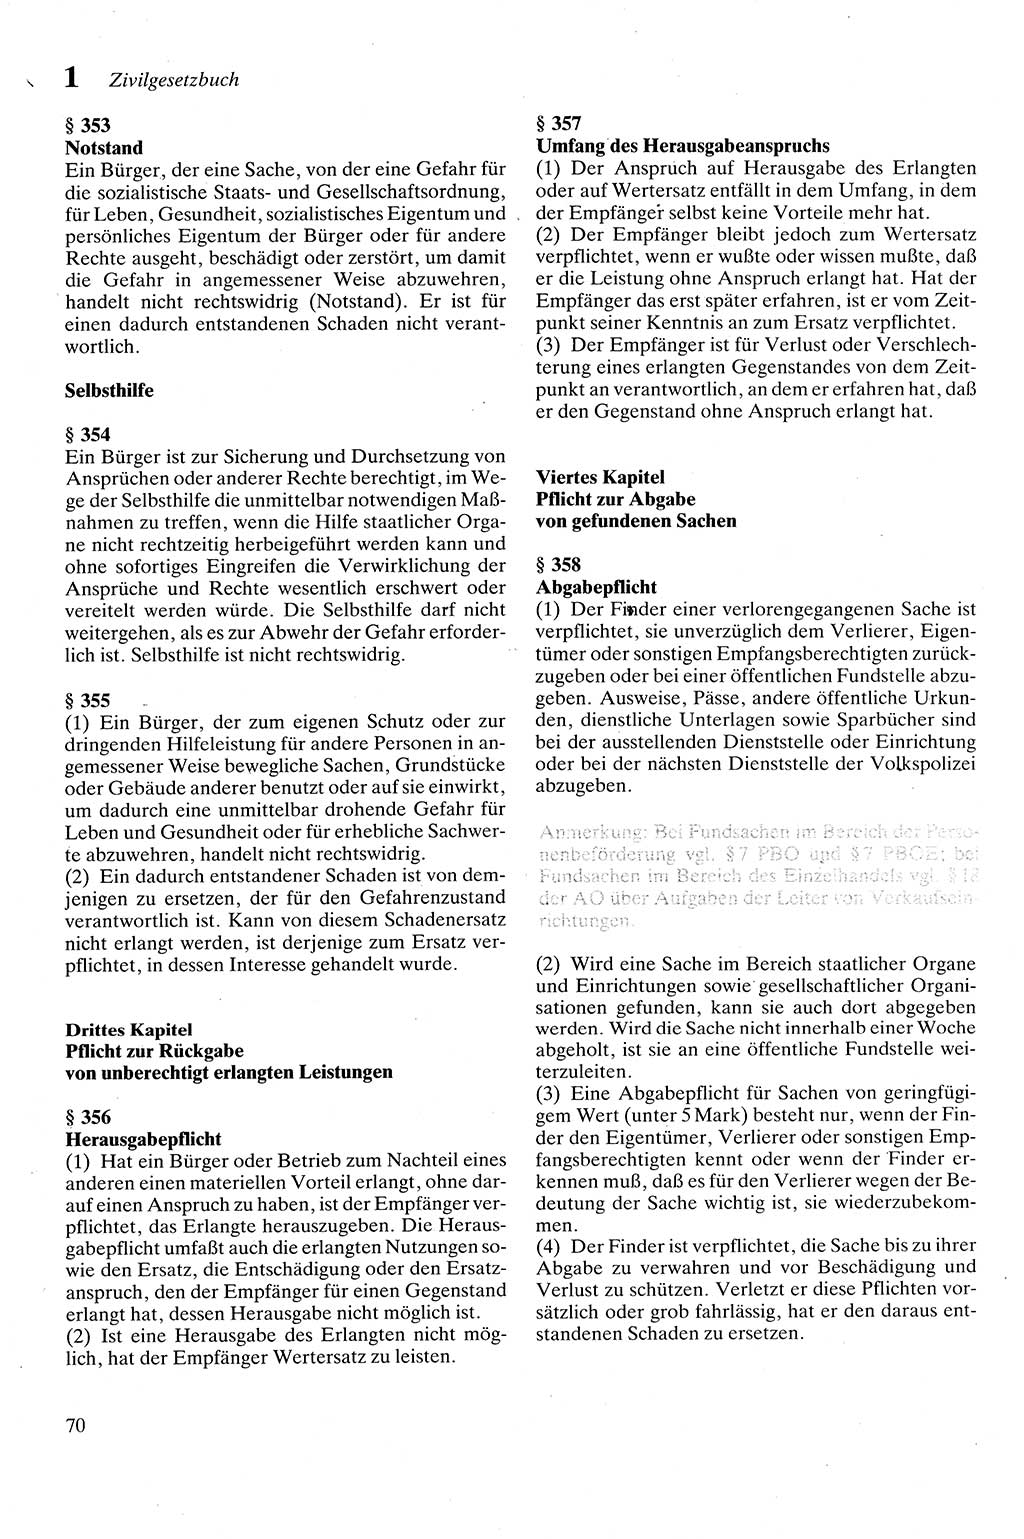 Zivilgesetzbuch (ZVG) sowie angrenzende Gesetze und Bestimmungen [Deutsche Demokratische Republik (DDR)] 1975, Seite 70 (ZGB Ges. Best. DDR 1975, S. 70)